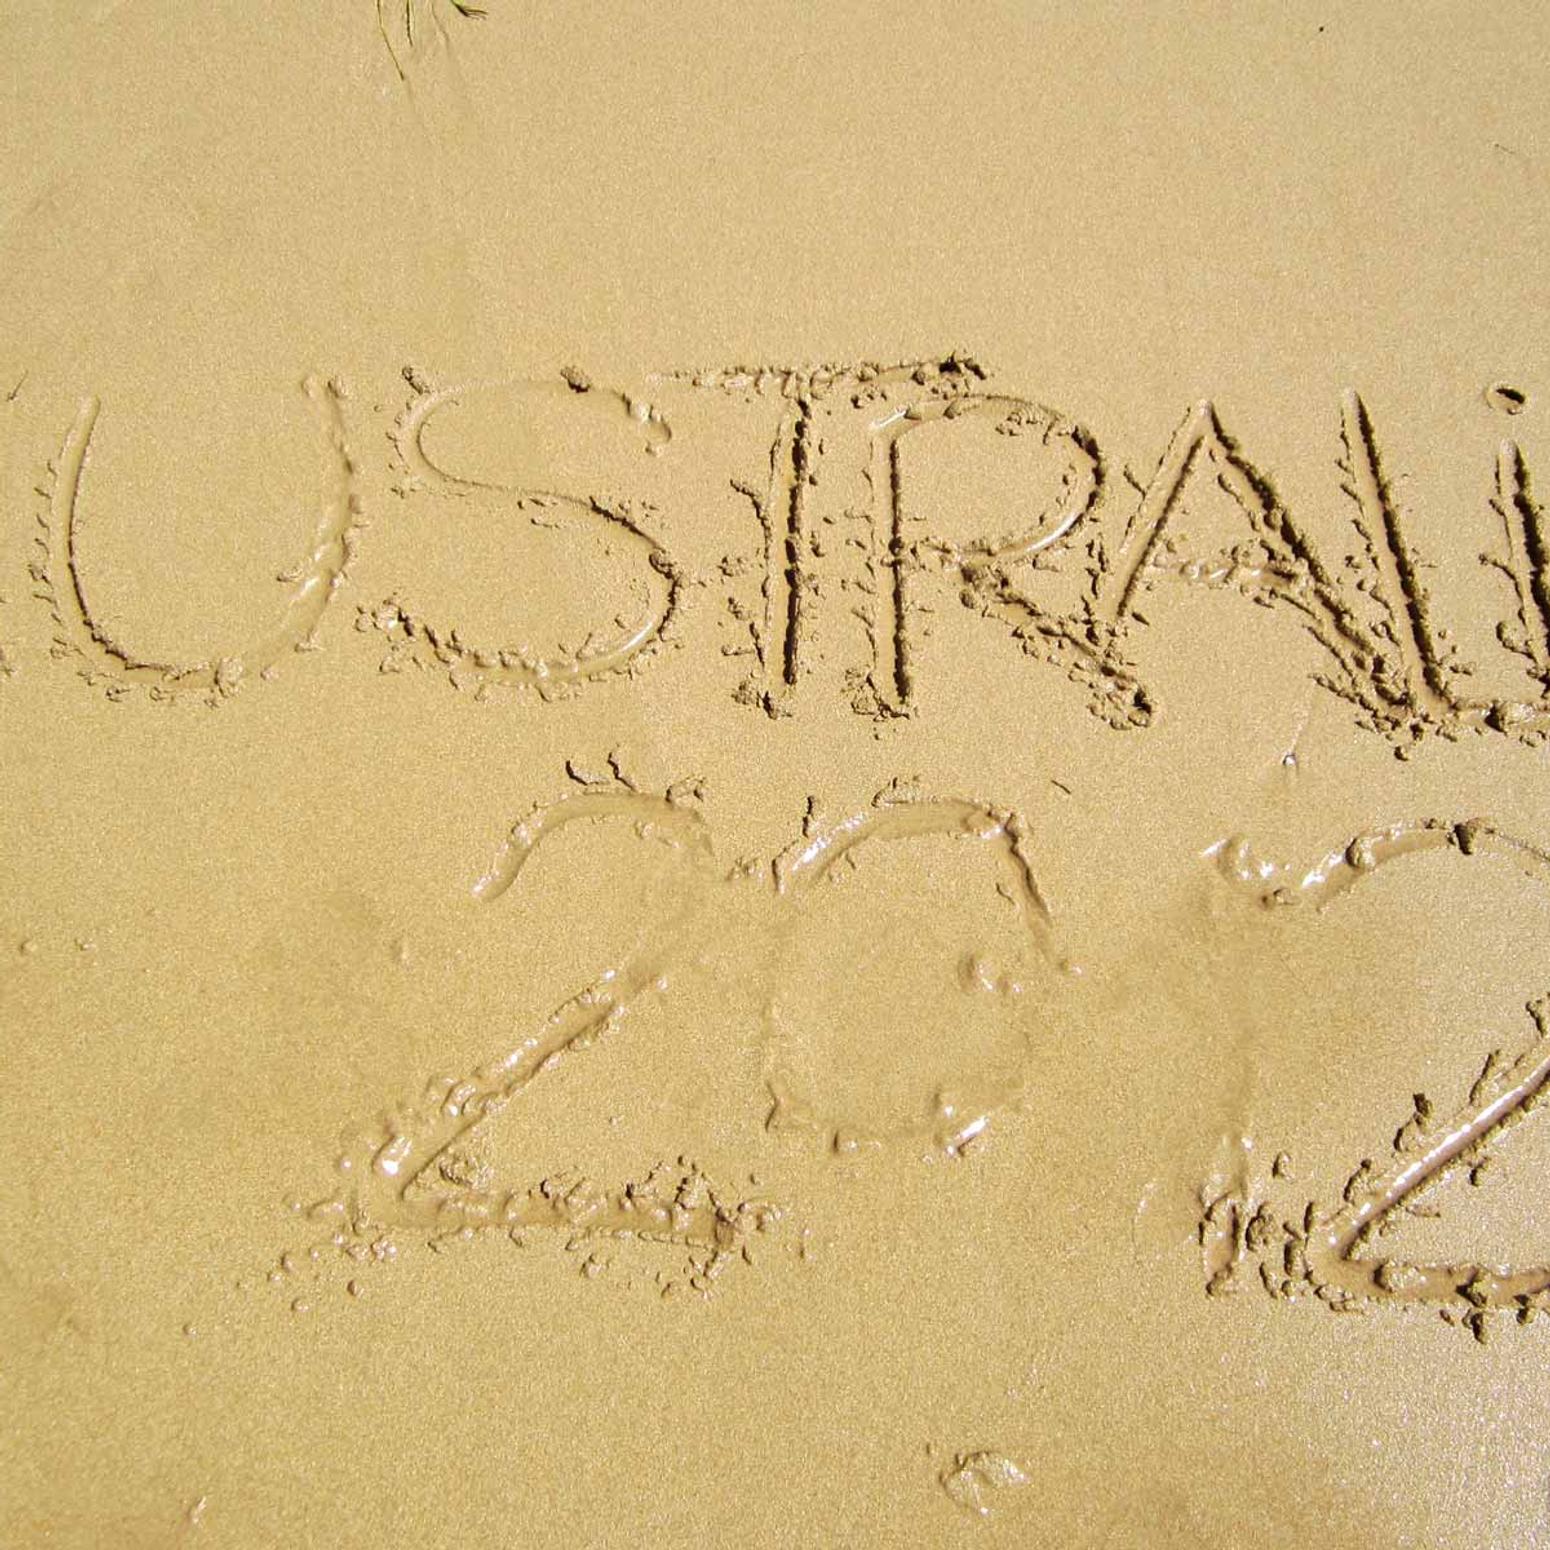 Australia 2012 in den nassen Sand geschrieben